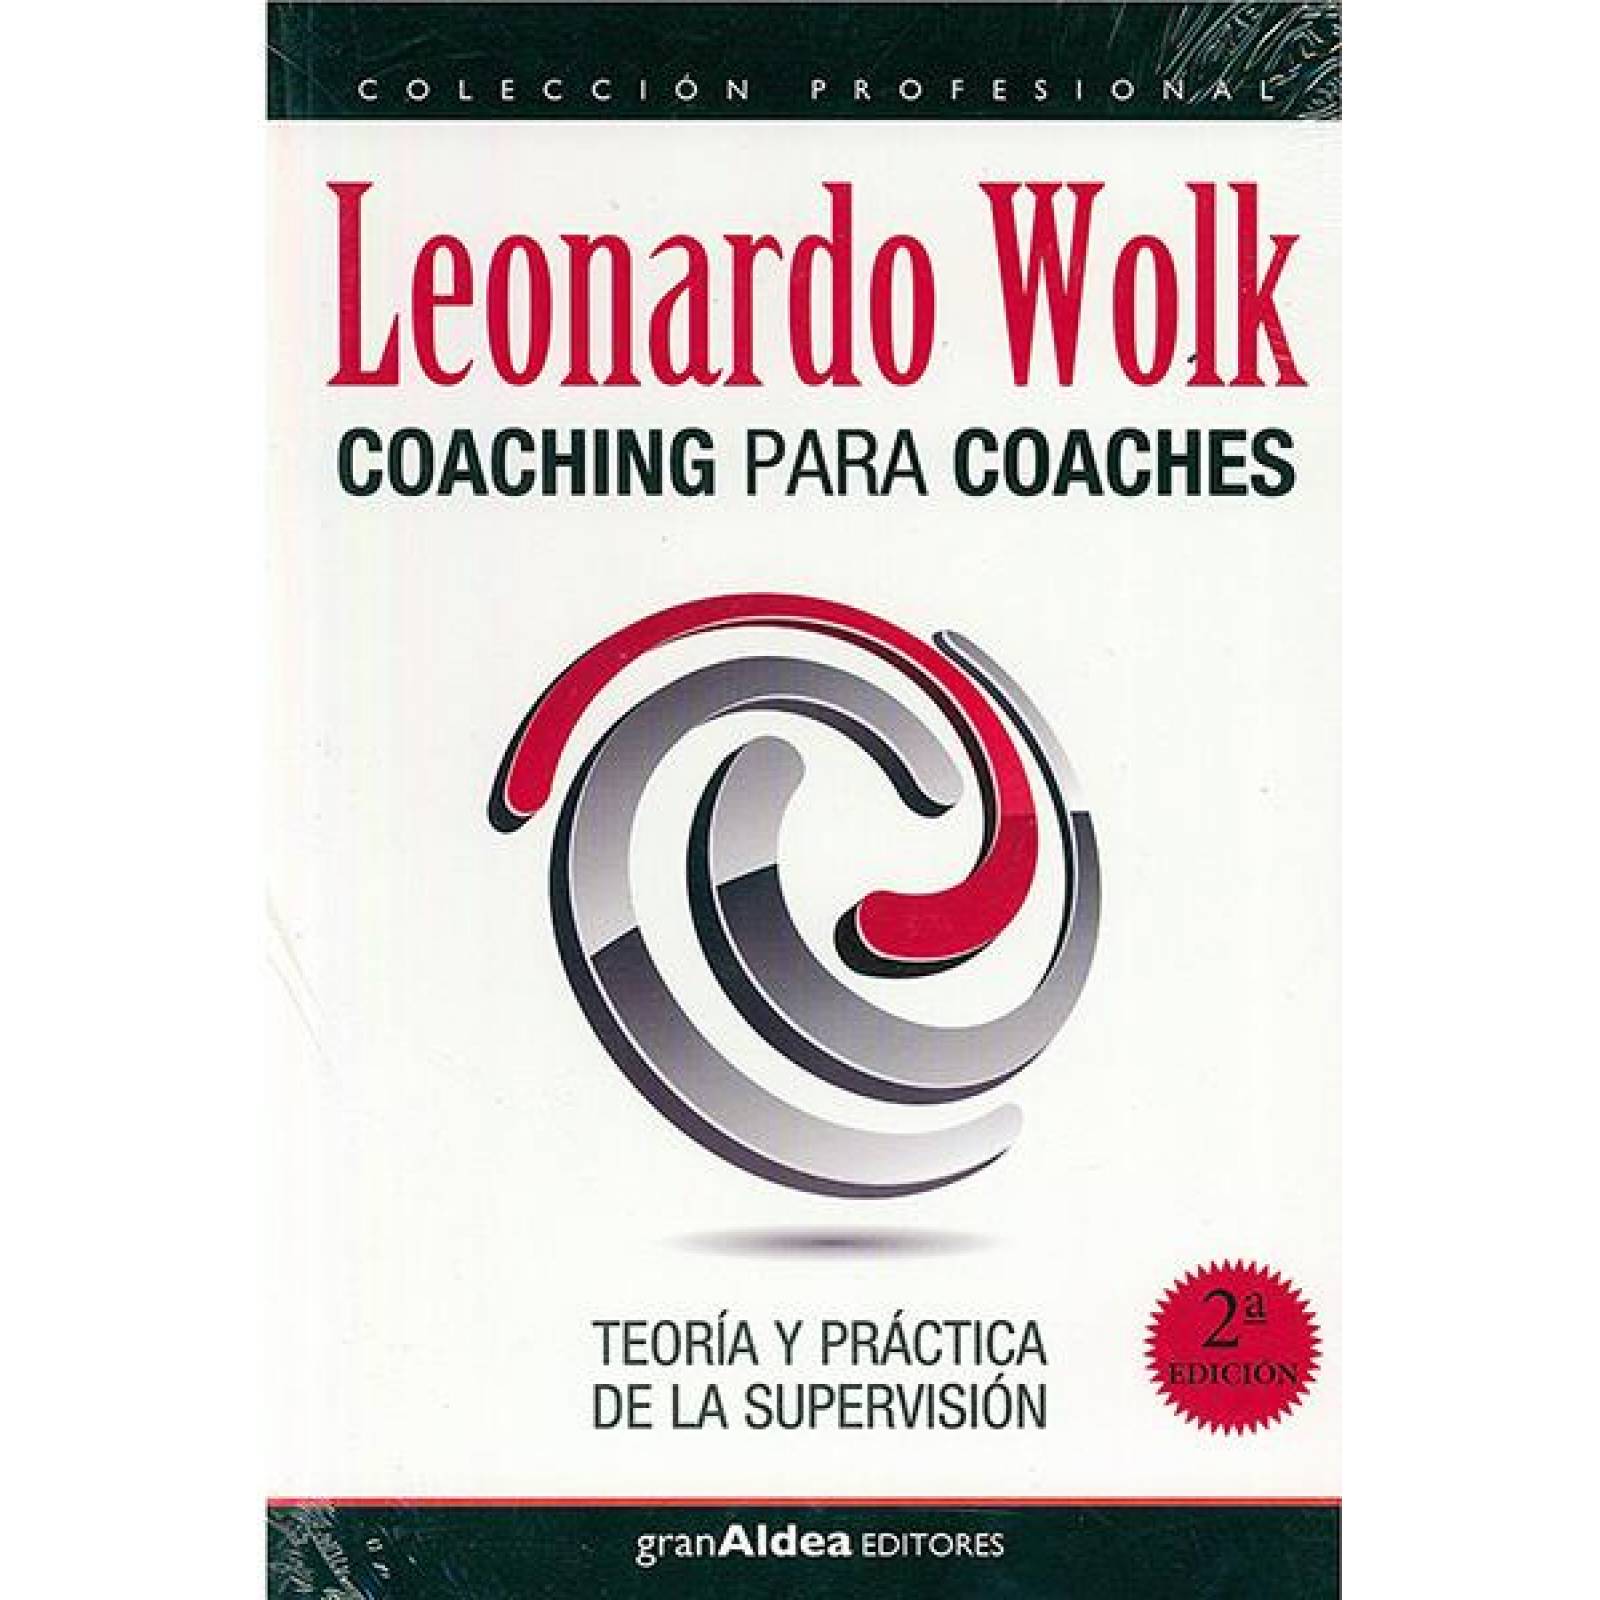 Coaching para coaches 